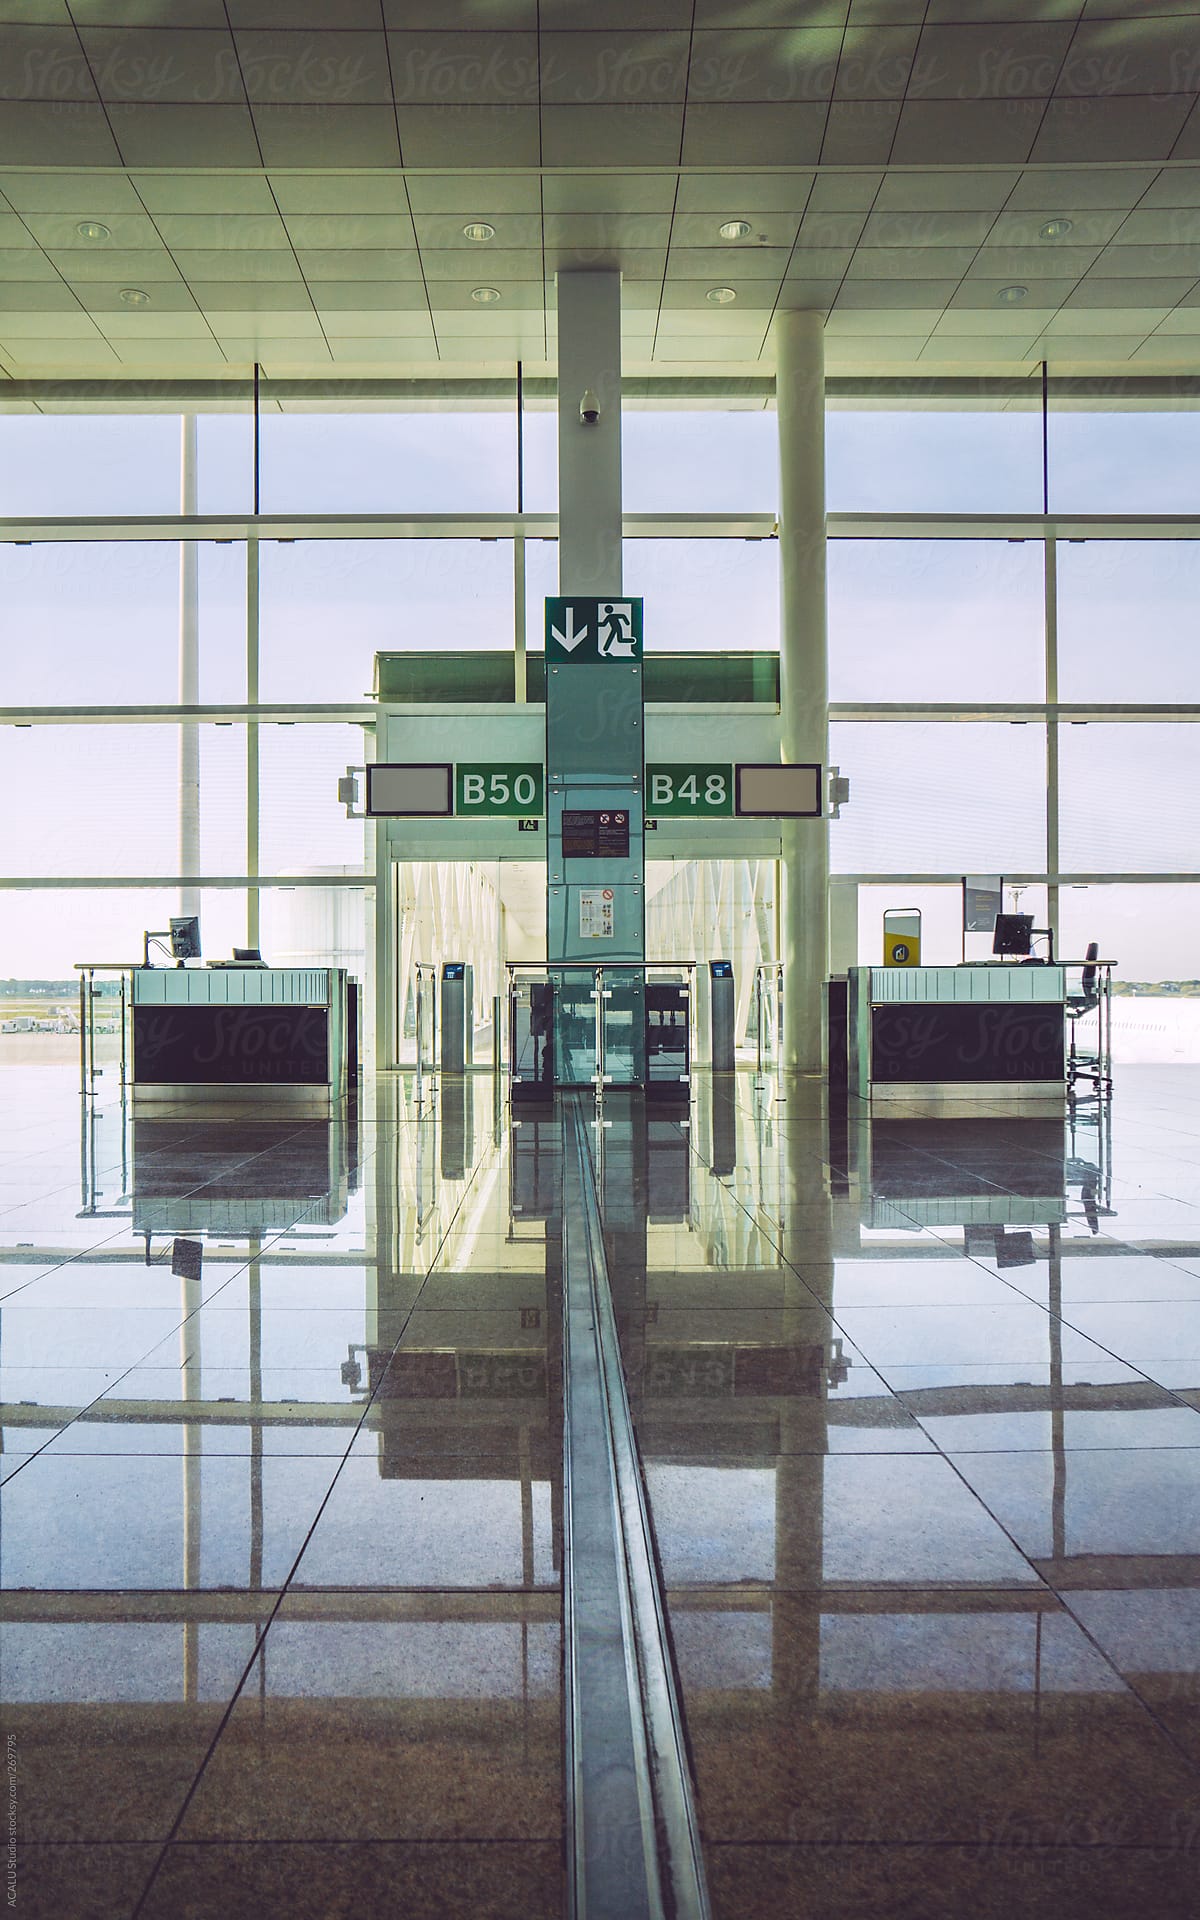 Desks in airport gate